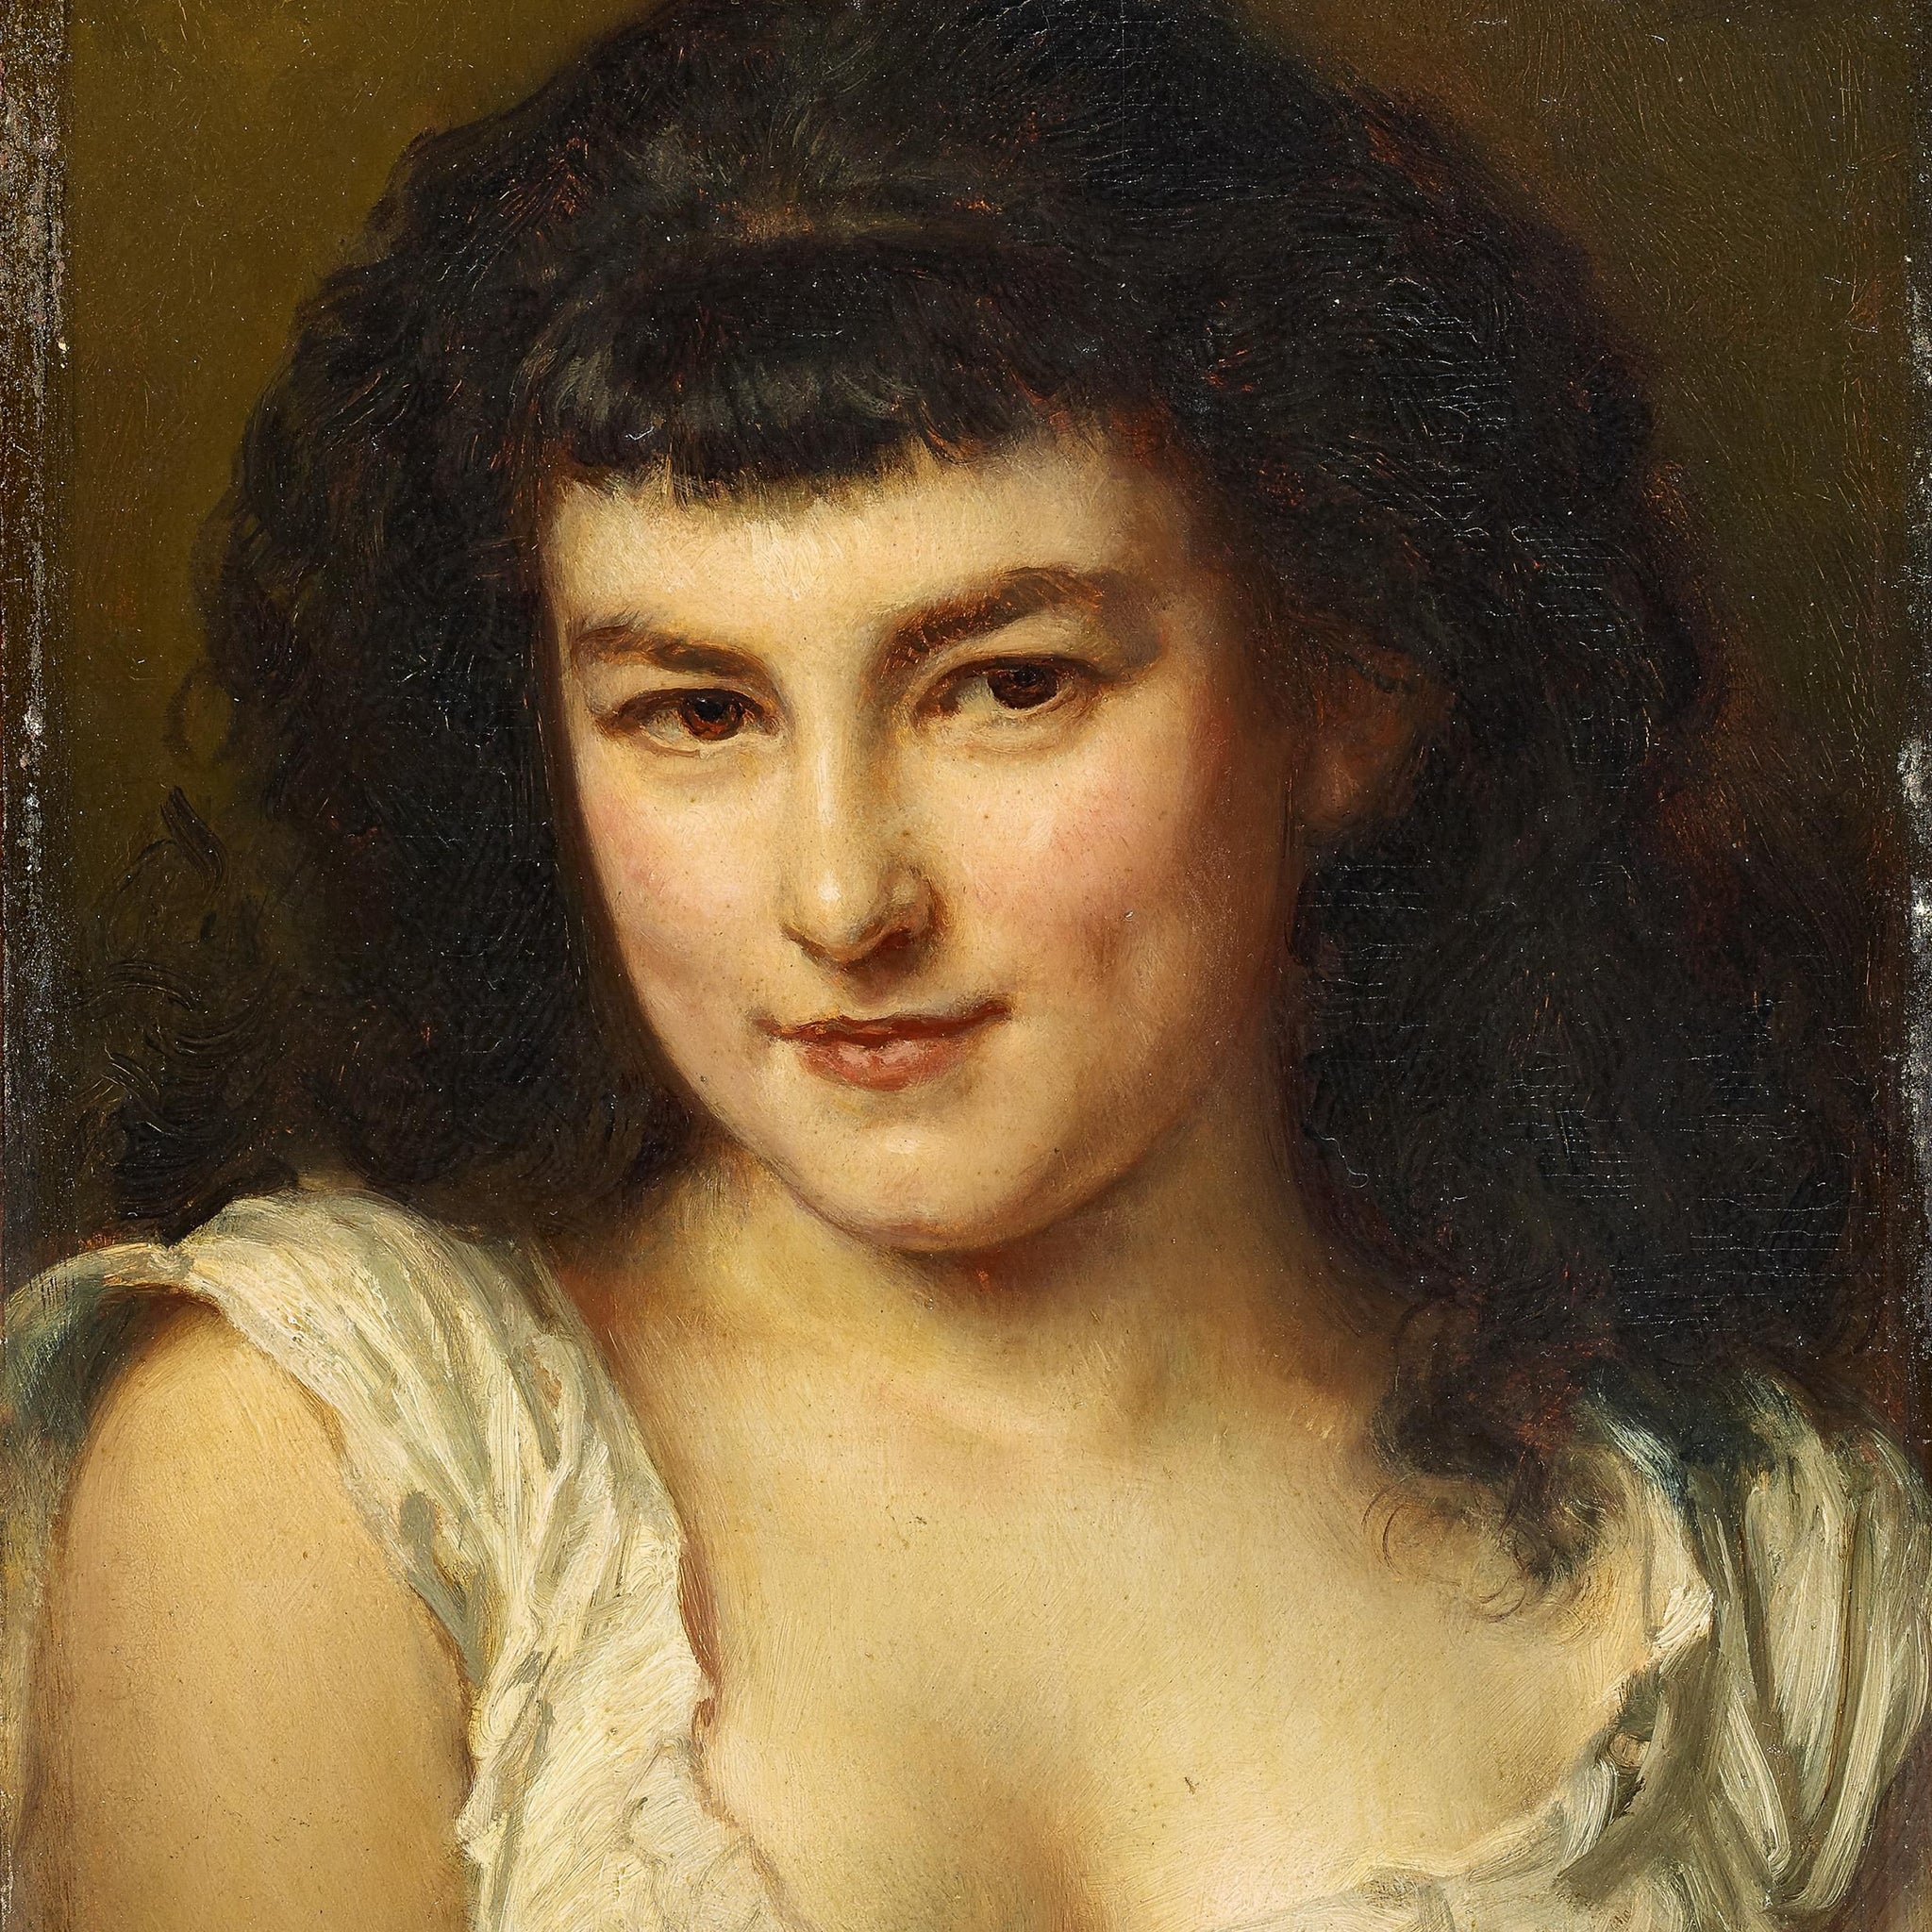 Portrait d'une jeune fille - Ludwig Knaus